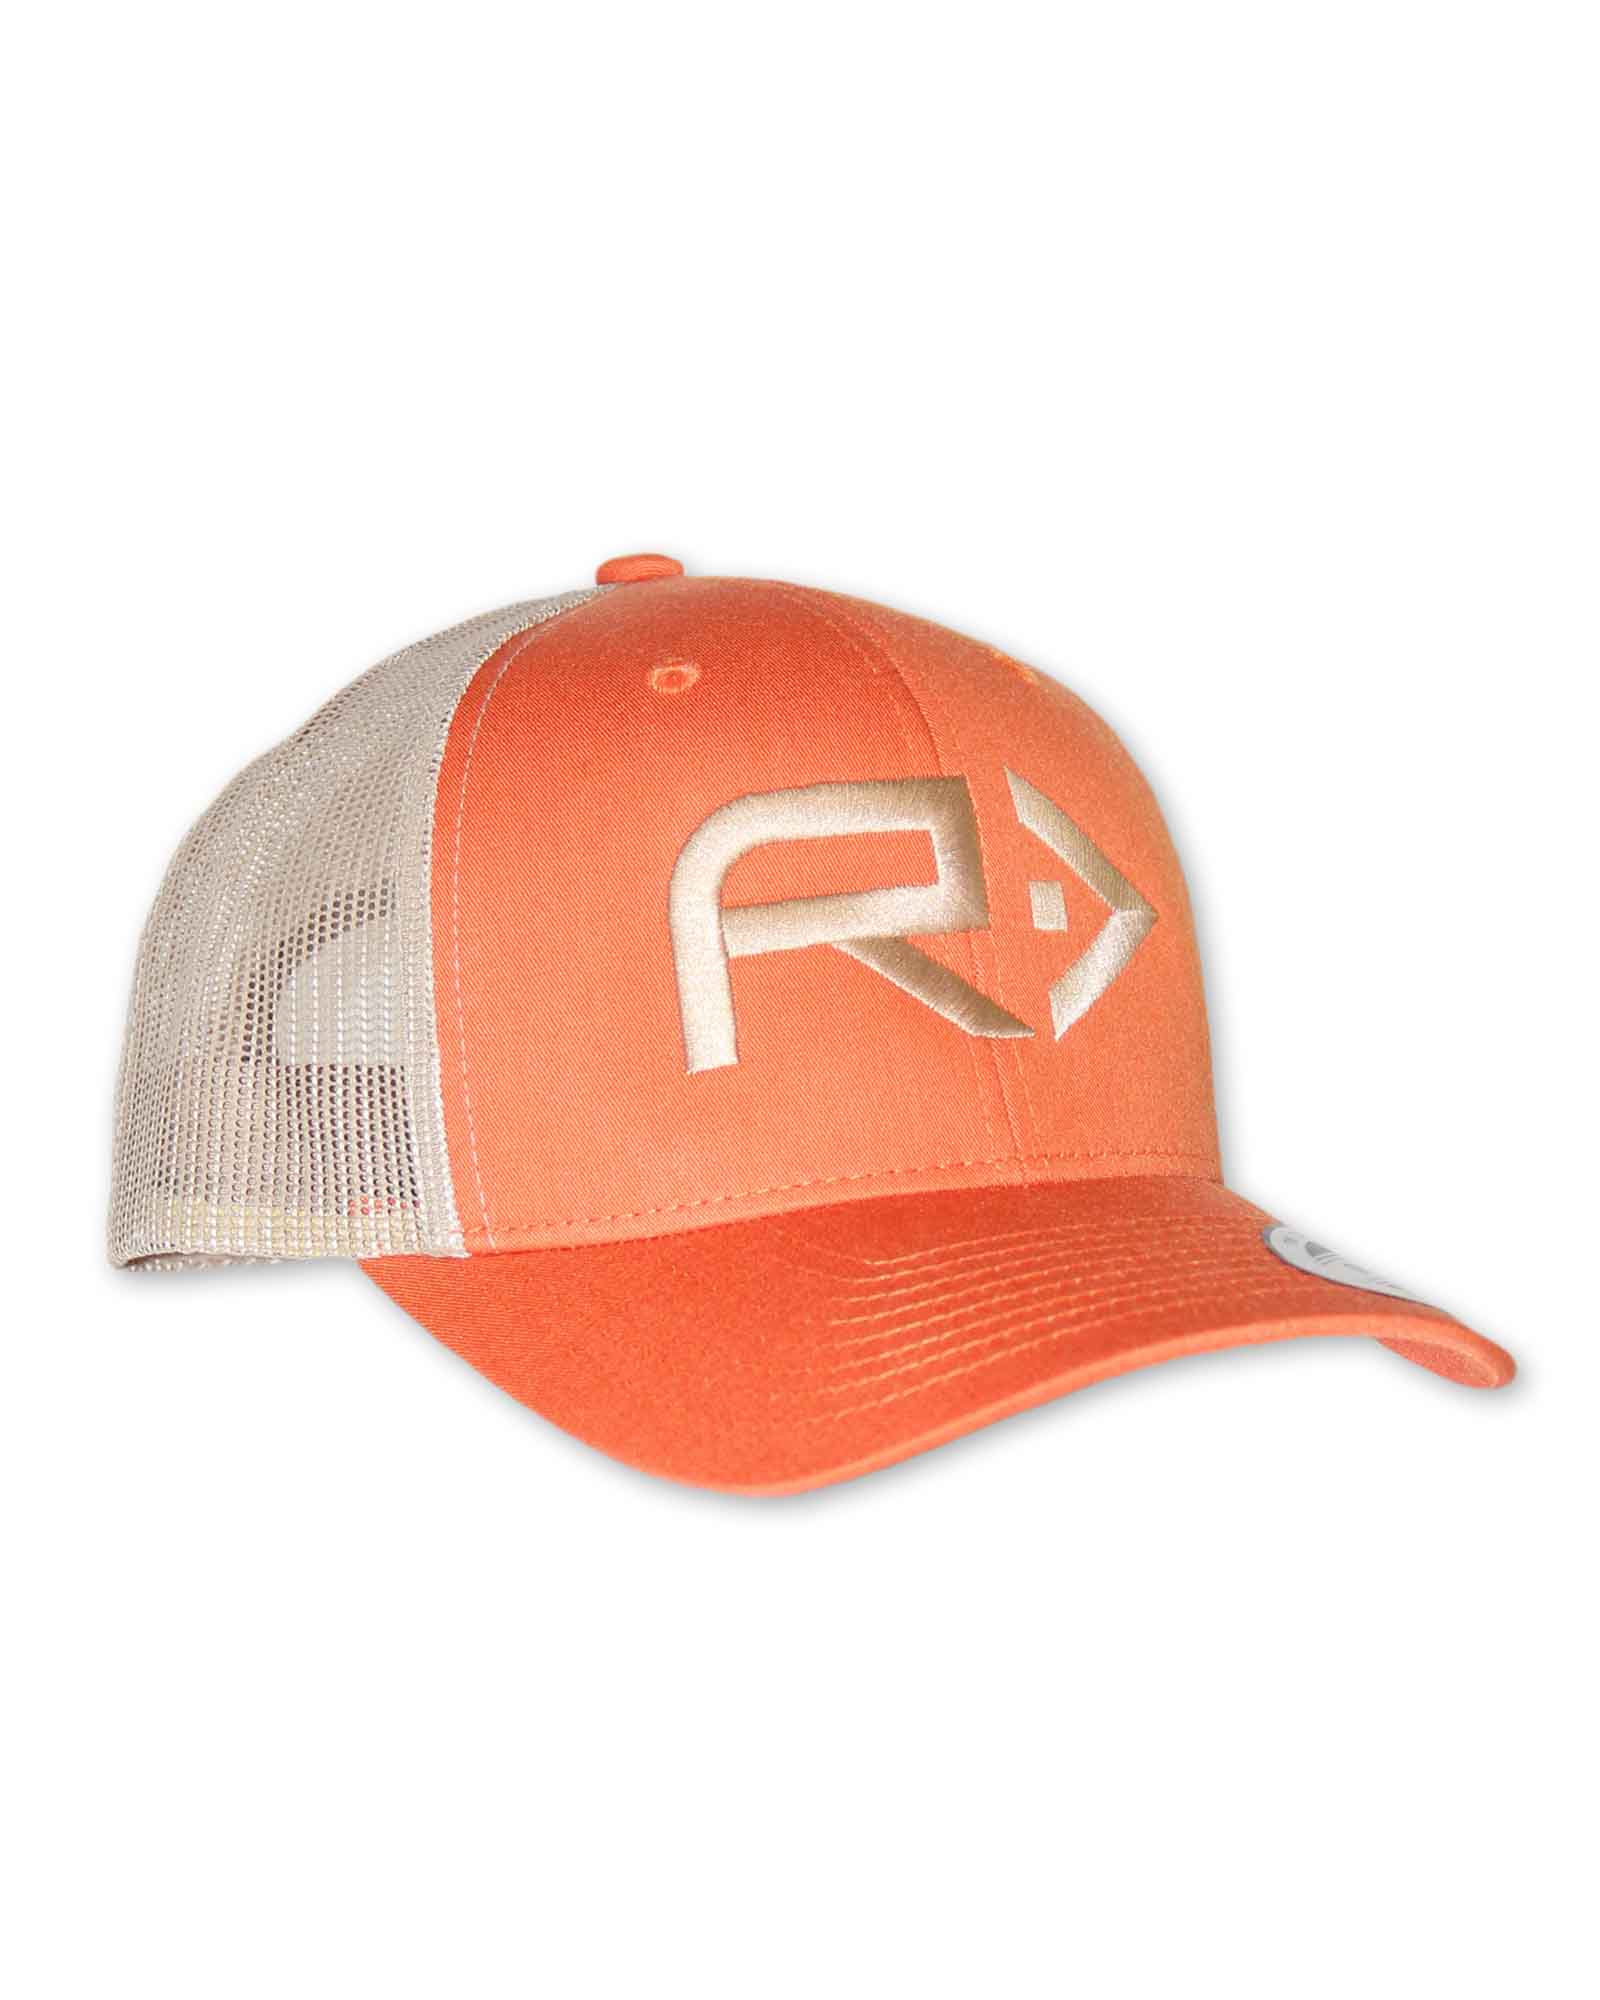 https://rahfish.com/wp-content/uploads/2016/11/Rahfish-big-R-trucker-hat-side-1.jpg